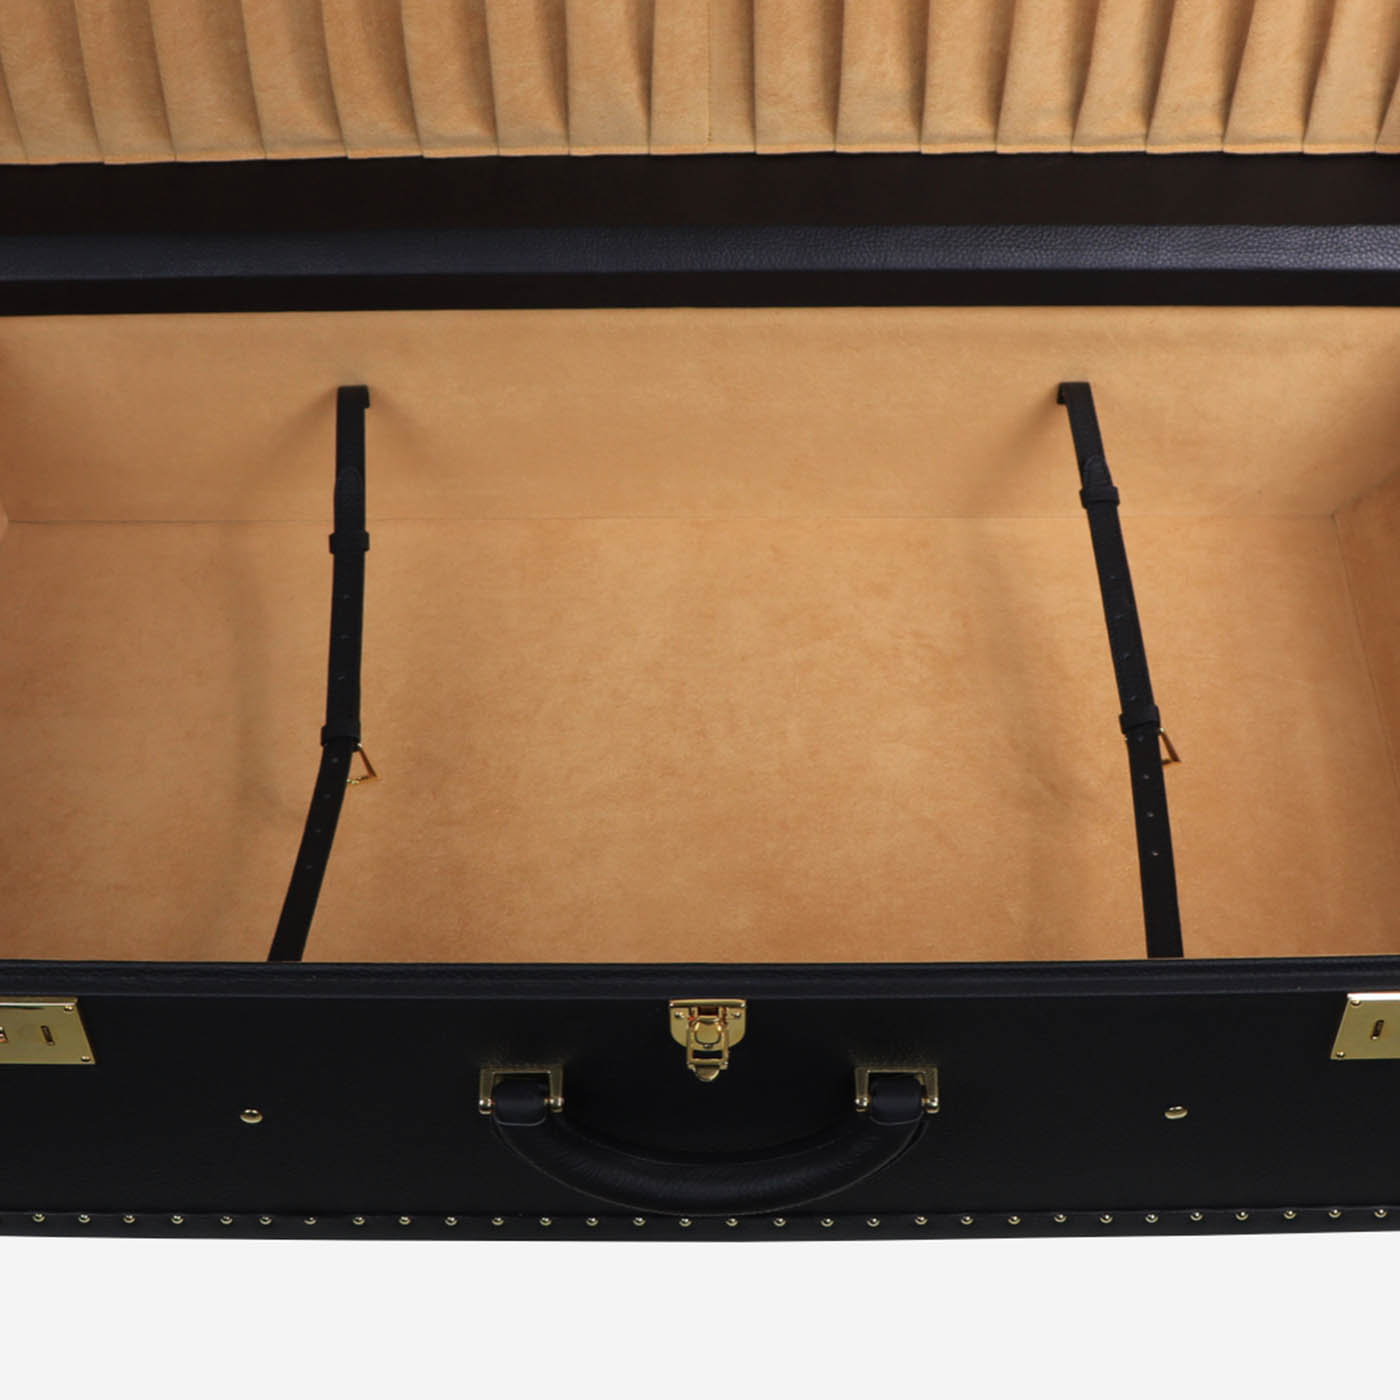 Regale Quilted Medium Black Suitcase (valise noire matelassée) - Vue alternative 5